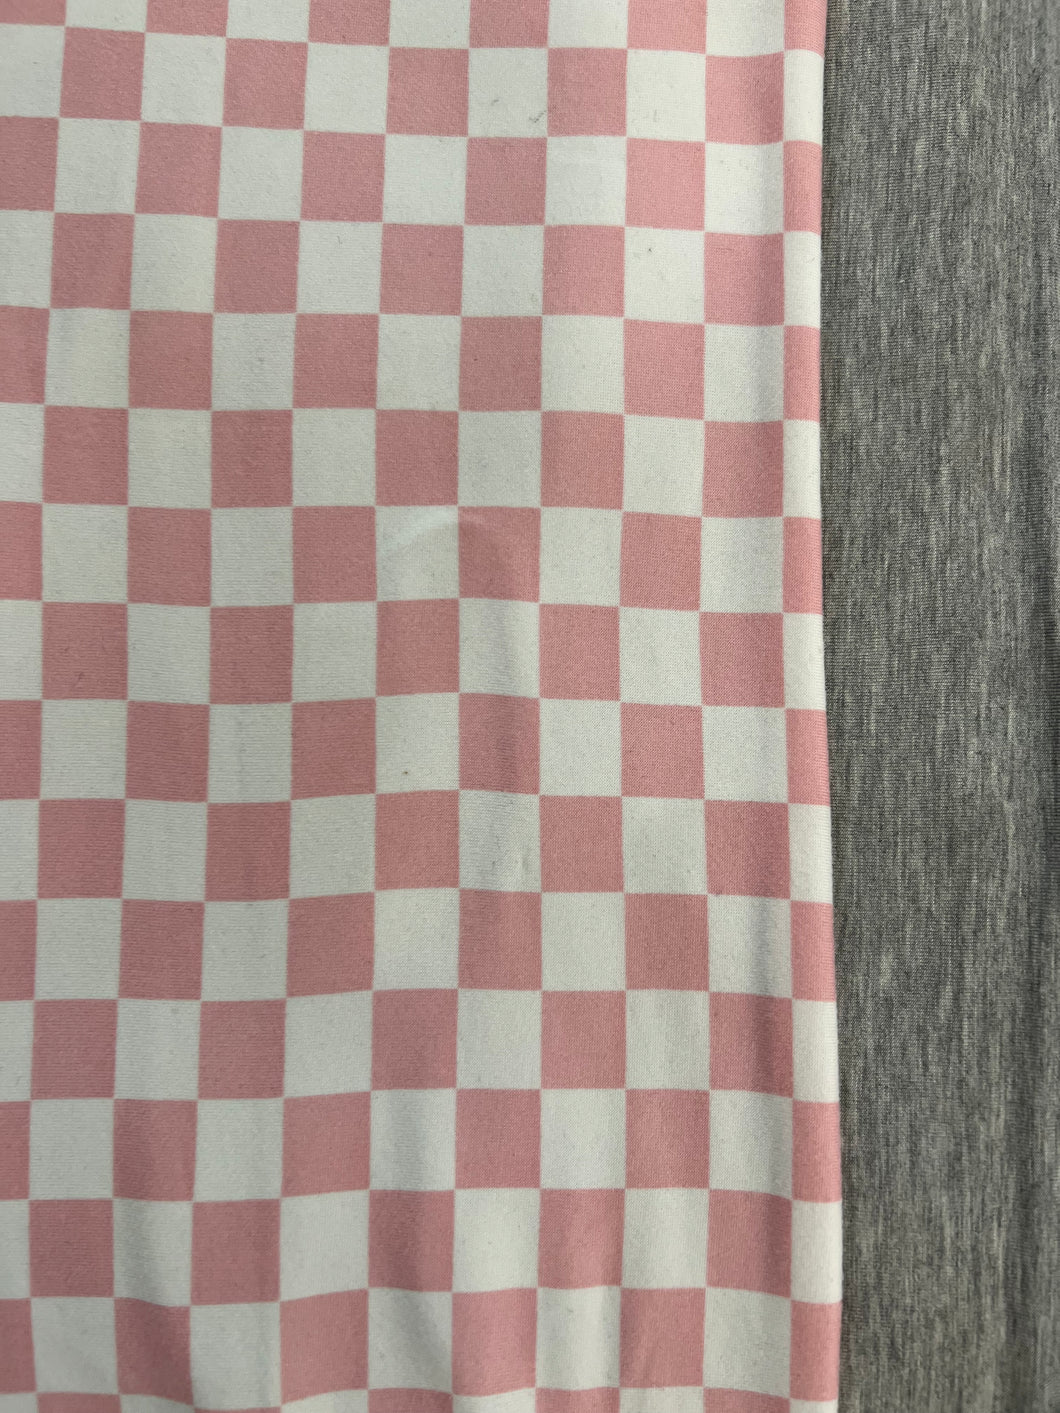 XL Pink/White Checkered & Heather Grey